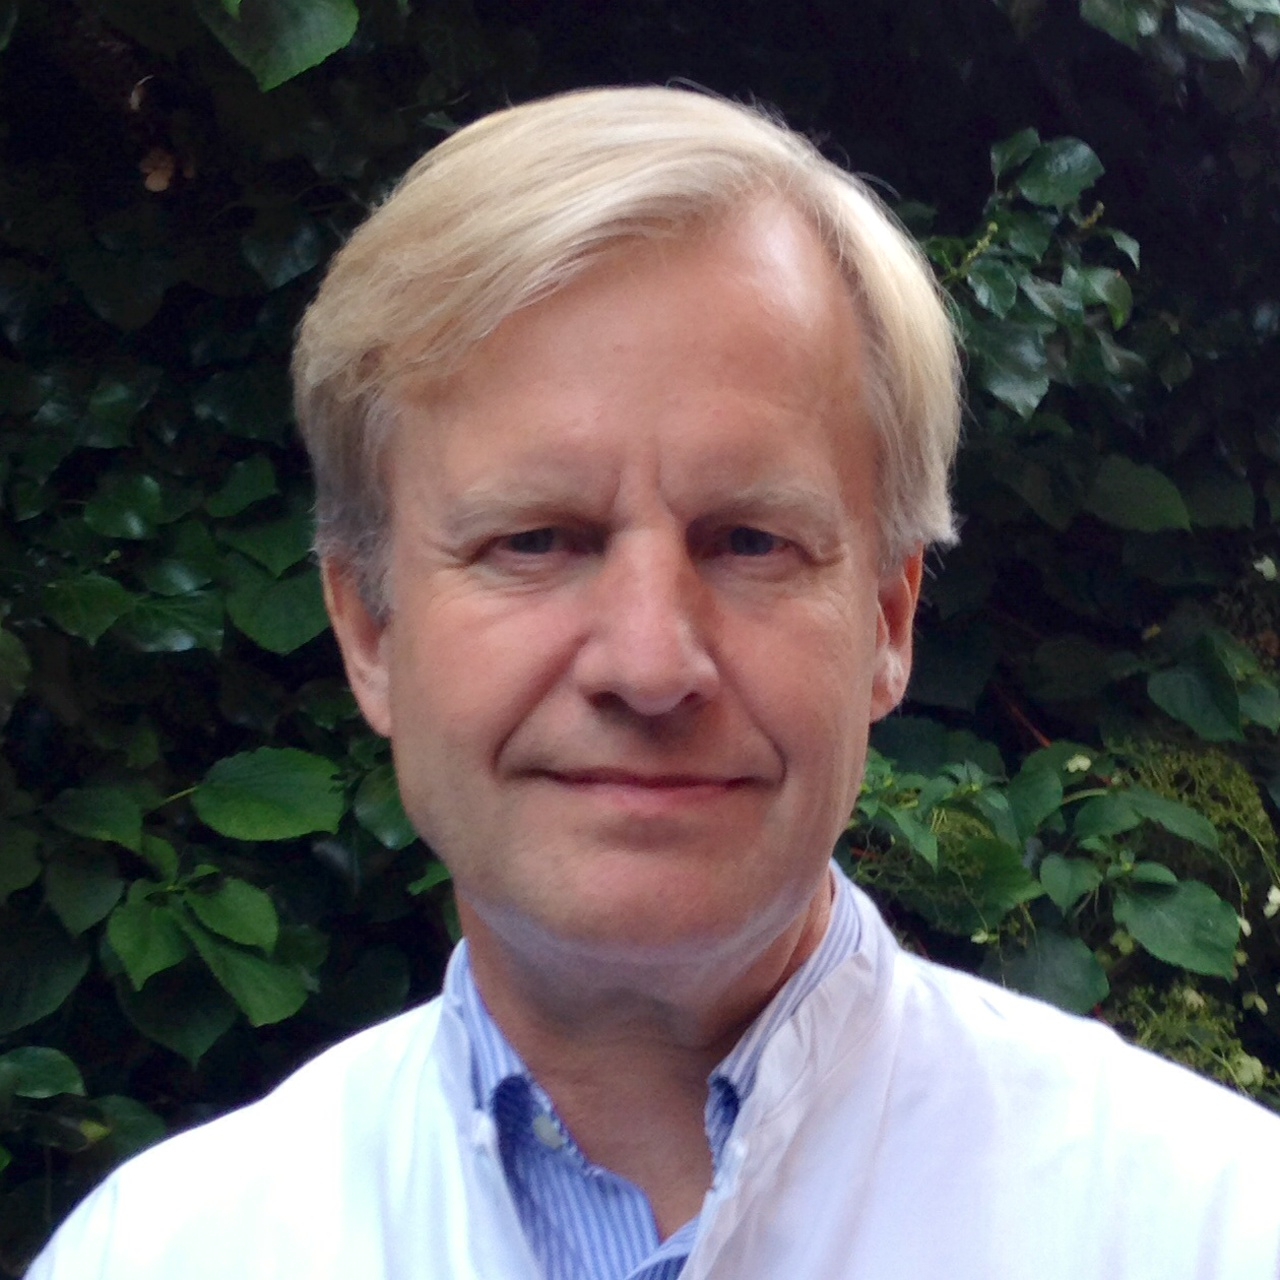 Finn Stener Jørgensen, MD, DMSc